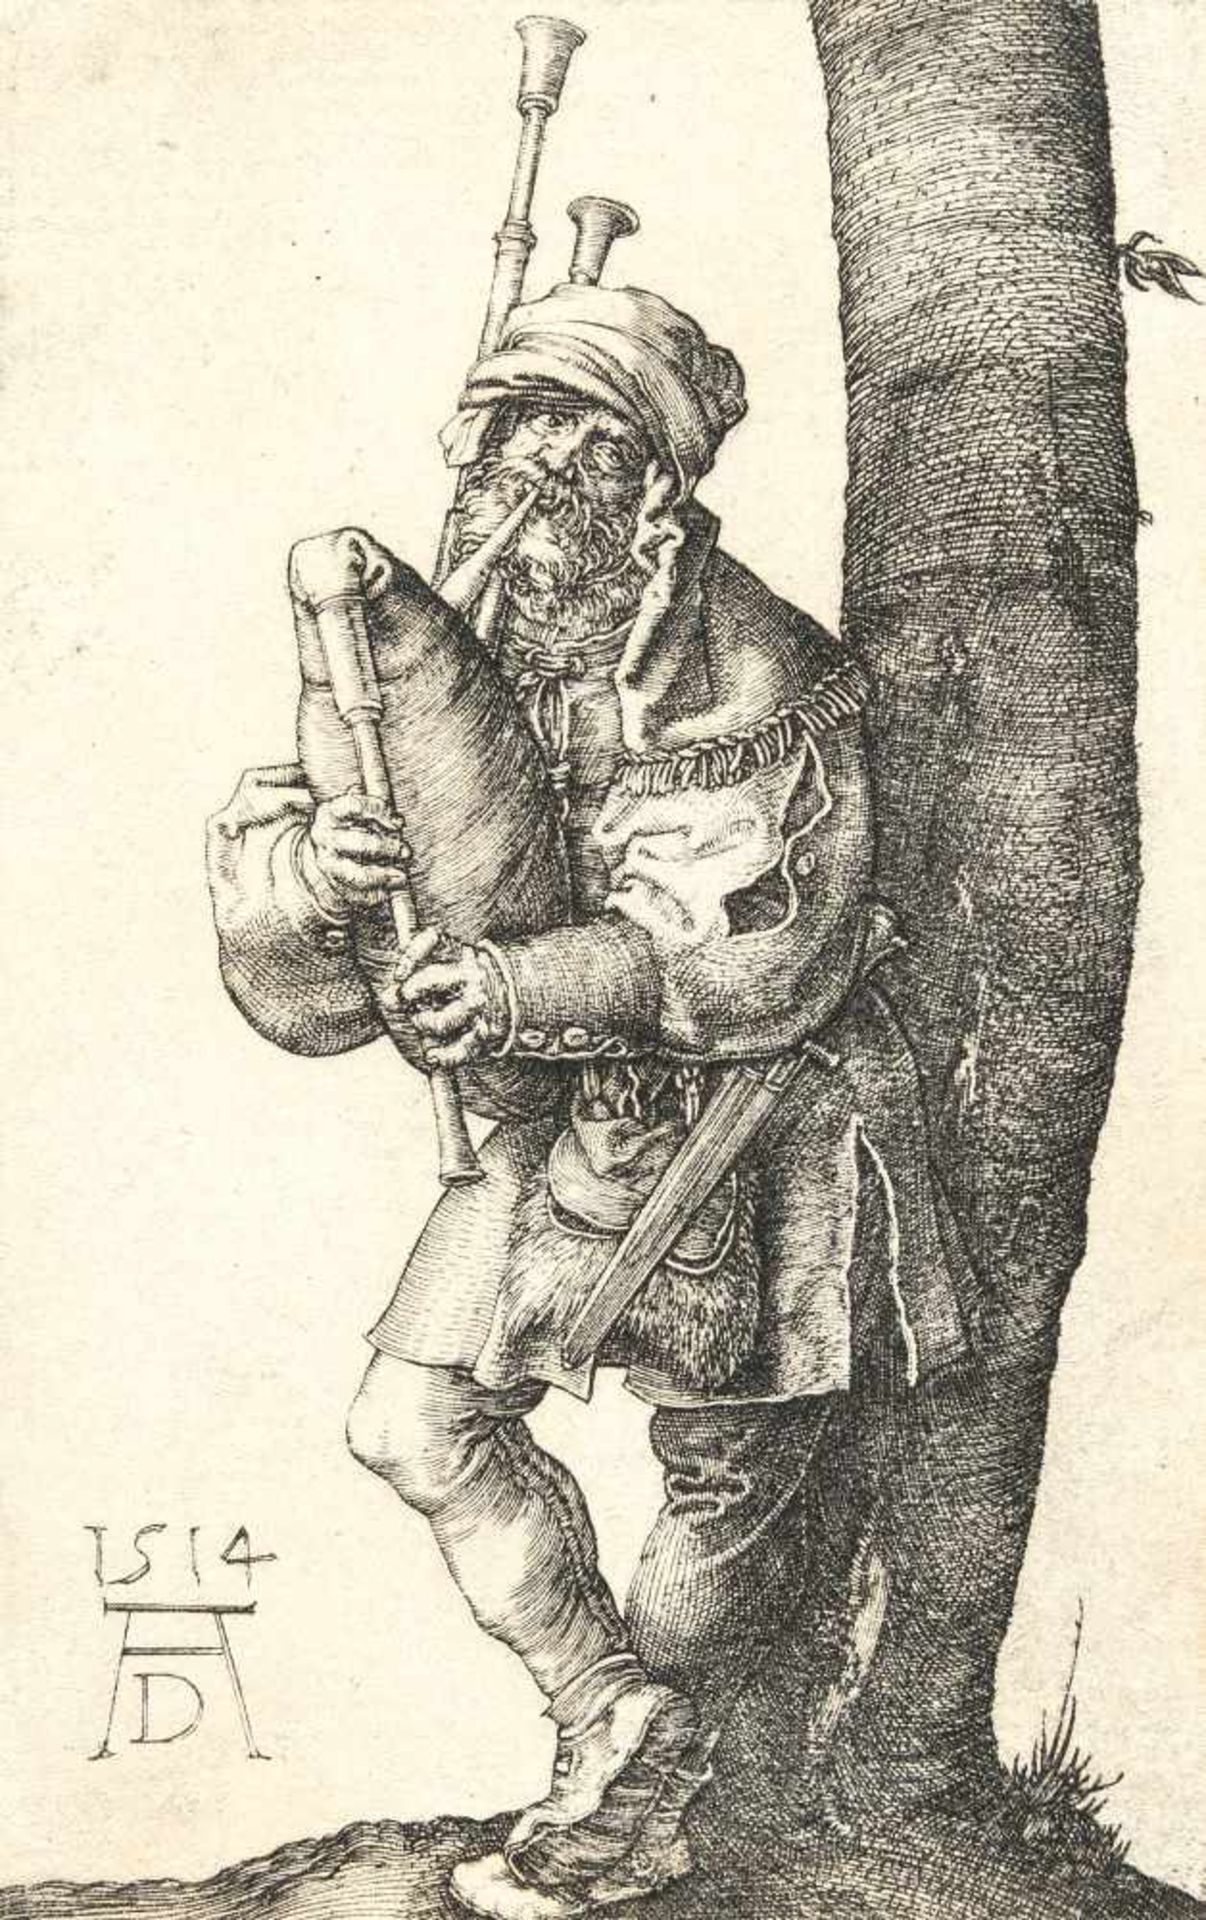 Albrecht Dürer1471 - Nuremberg - 1528Der DudelsackpfeiferKupferstich auf Bütten. (1514). 11,6 x 7,